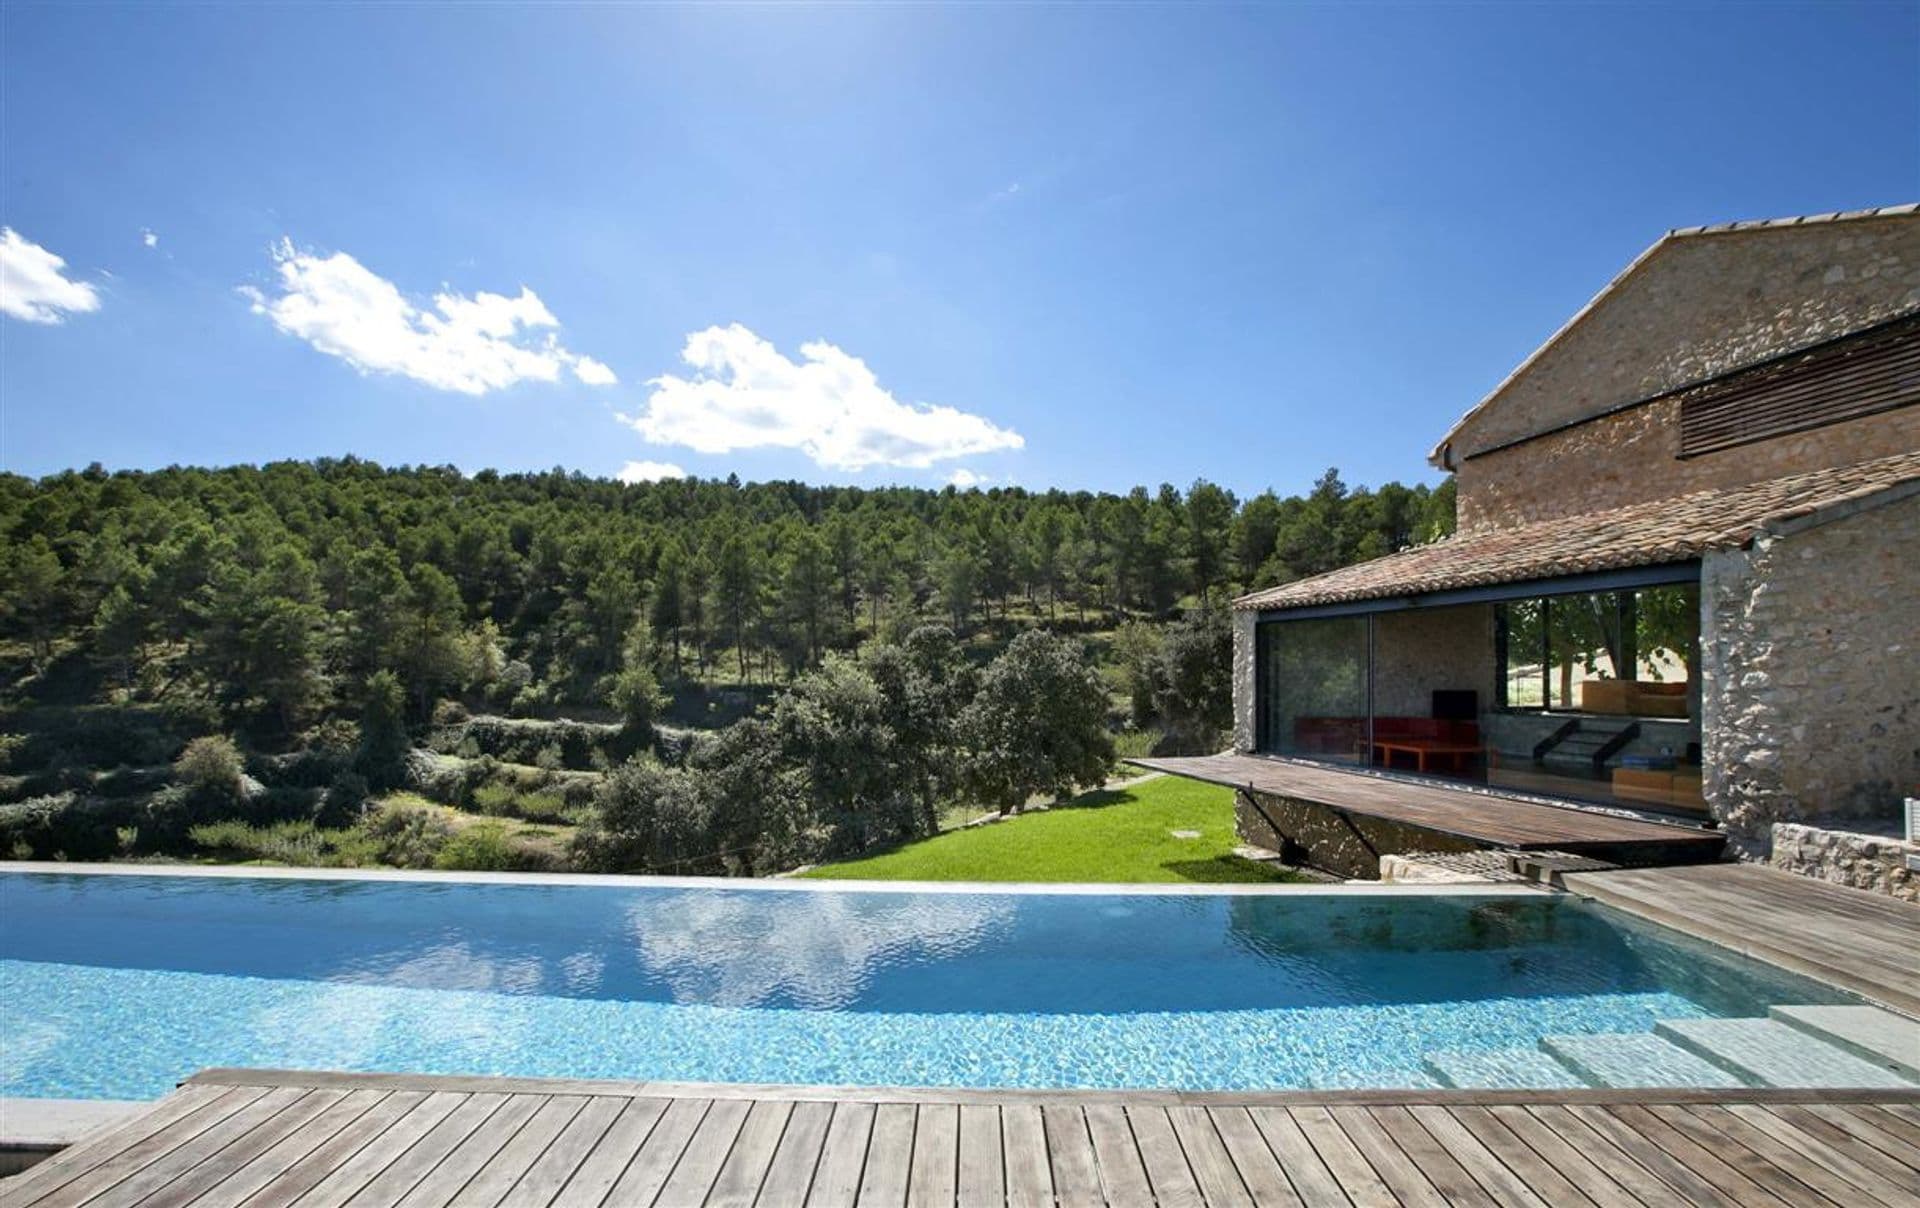 Exclusiva villa de diseño de piedra y acero en lo alto de una montaña en Bocairent, Valencia.